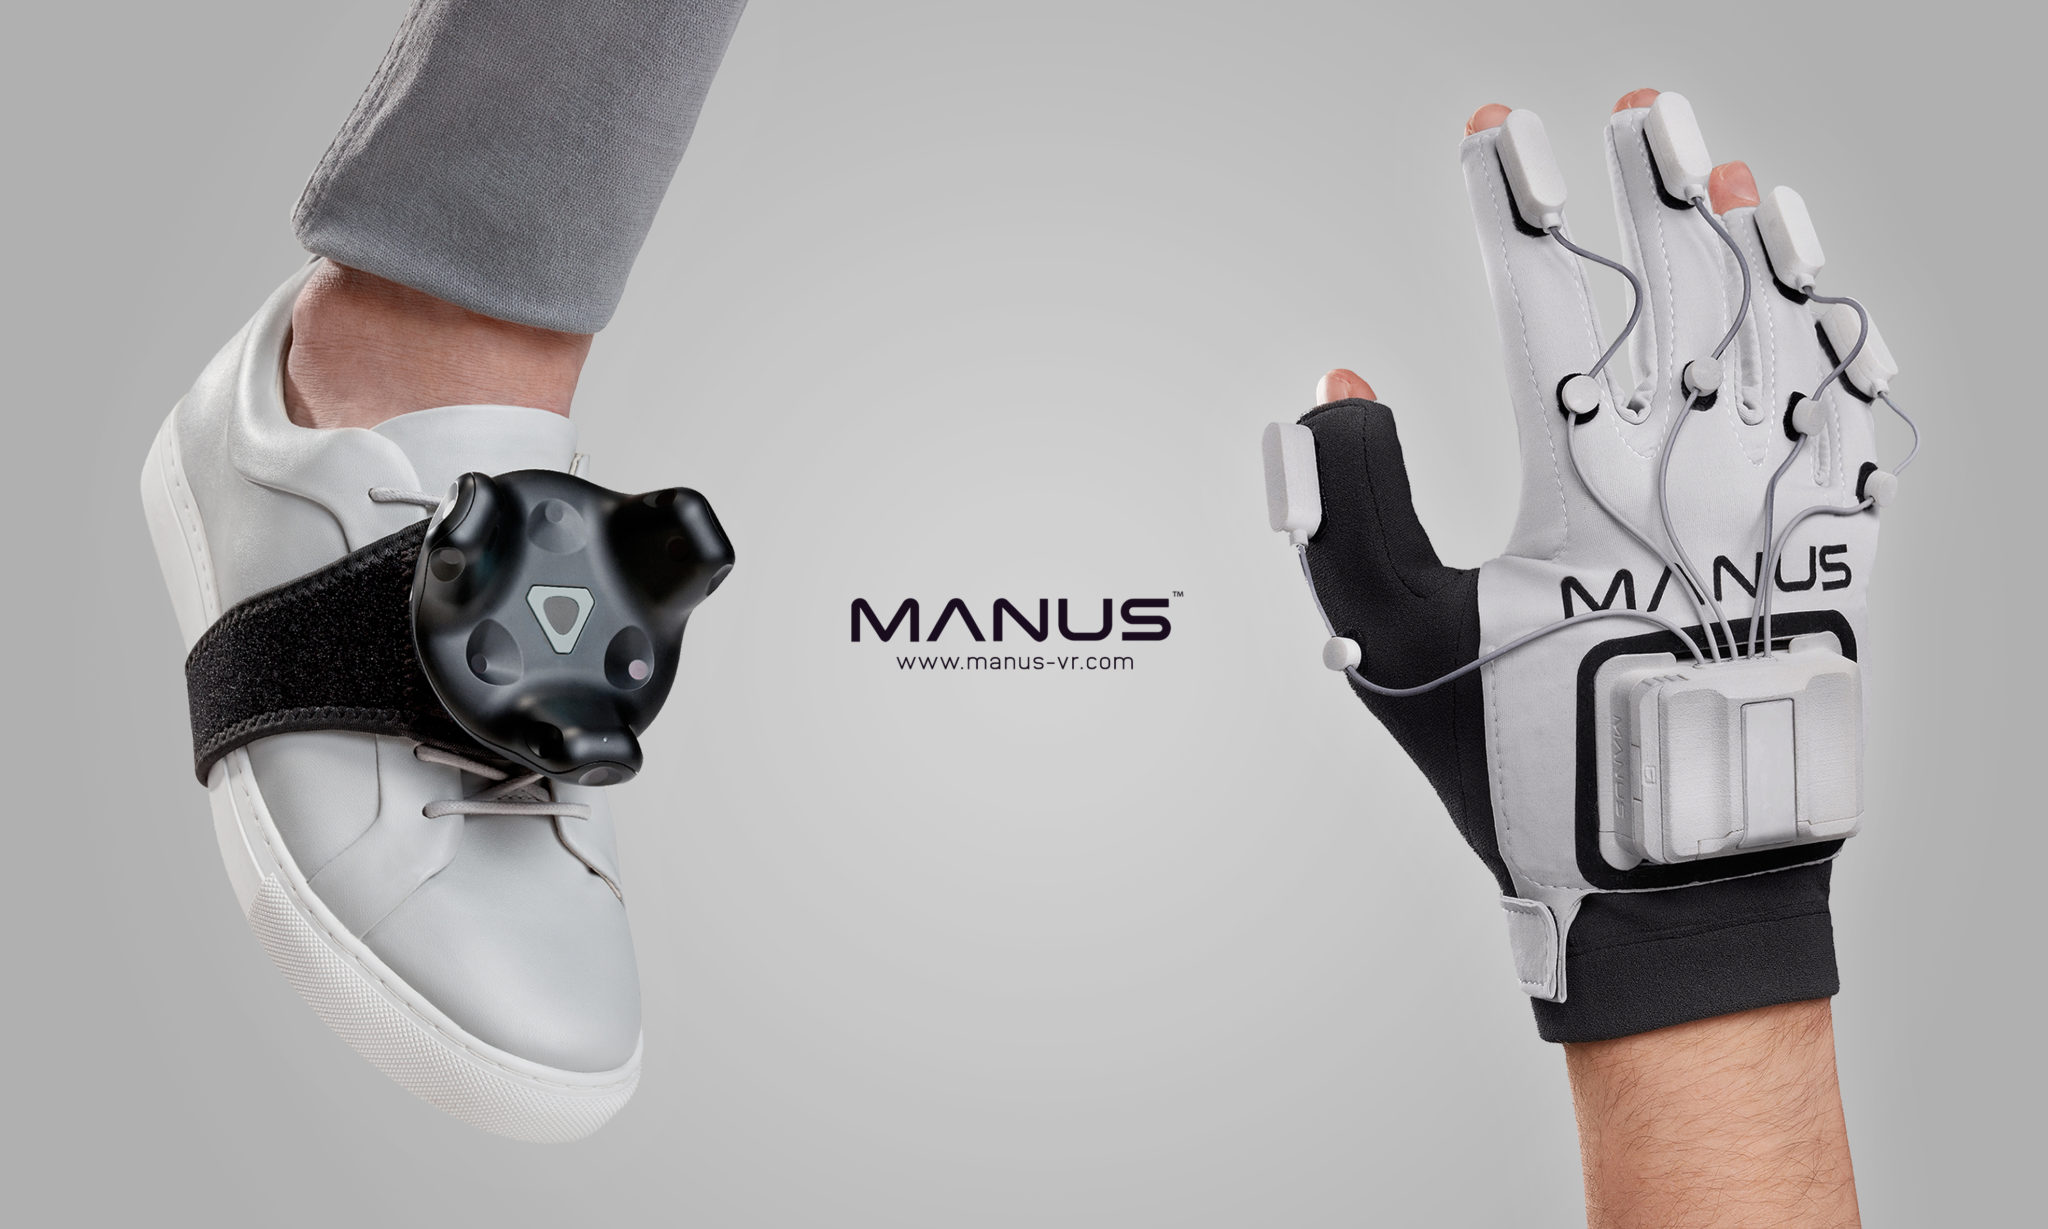 oculus rift gloves